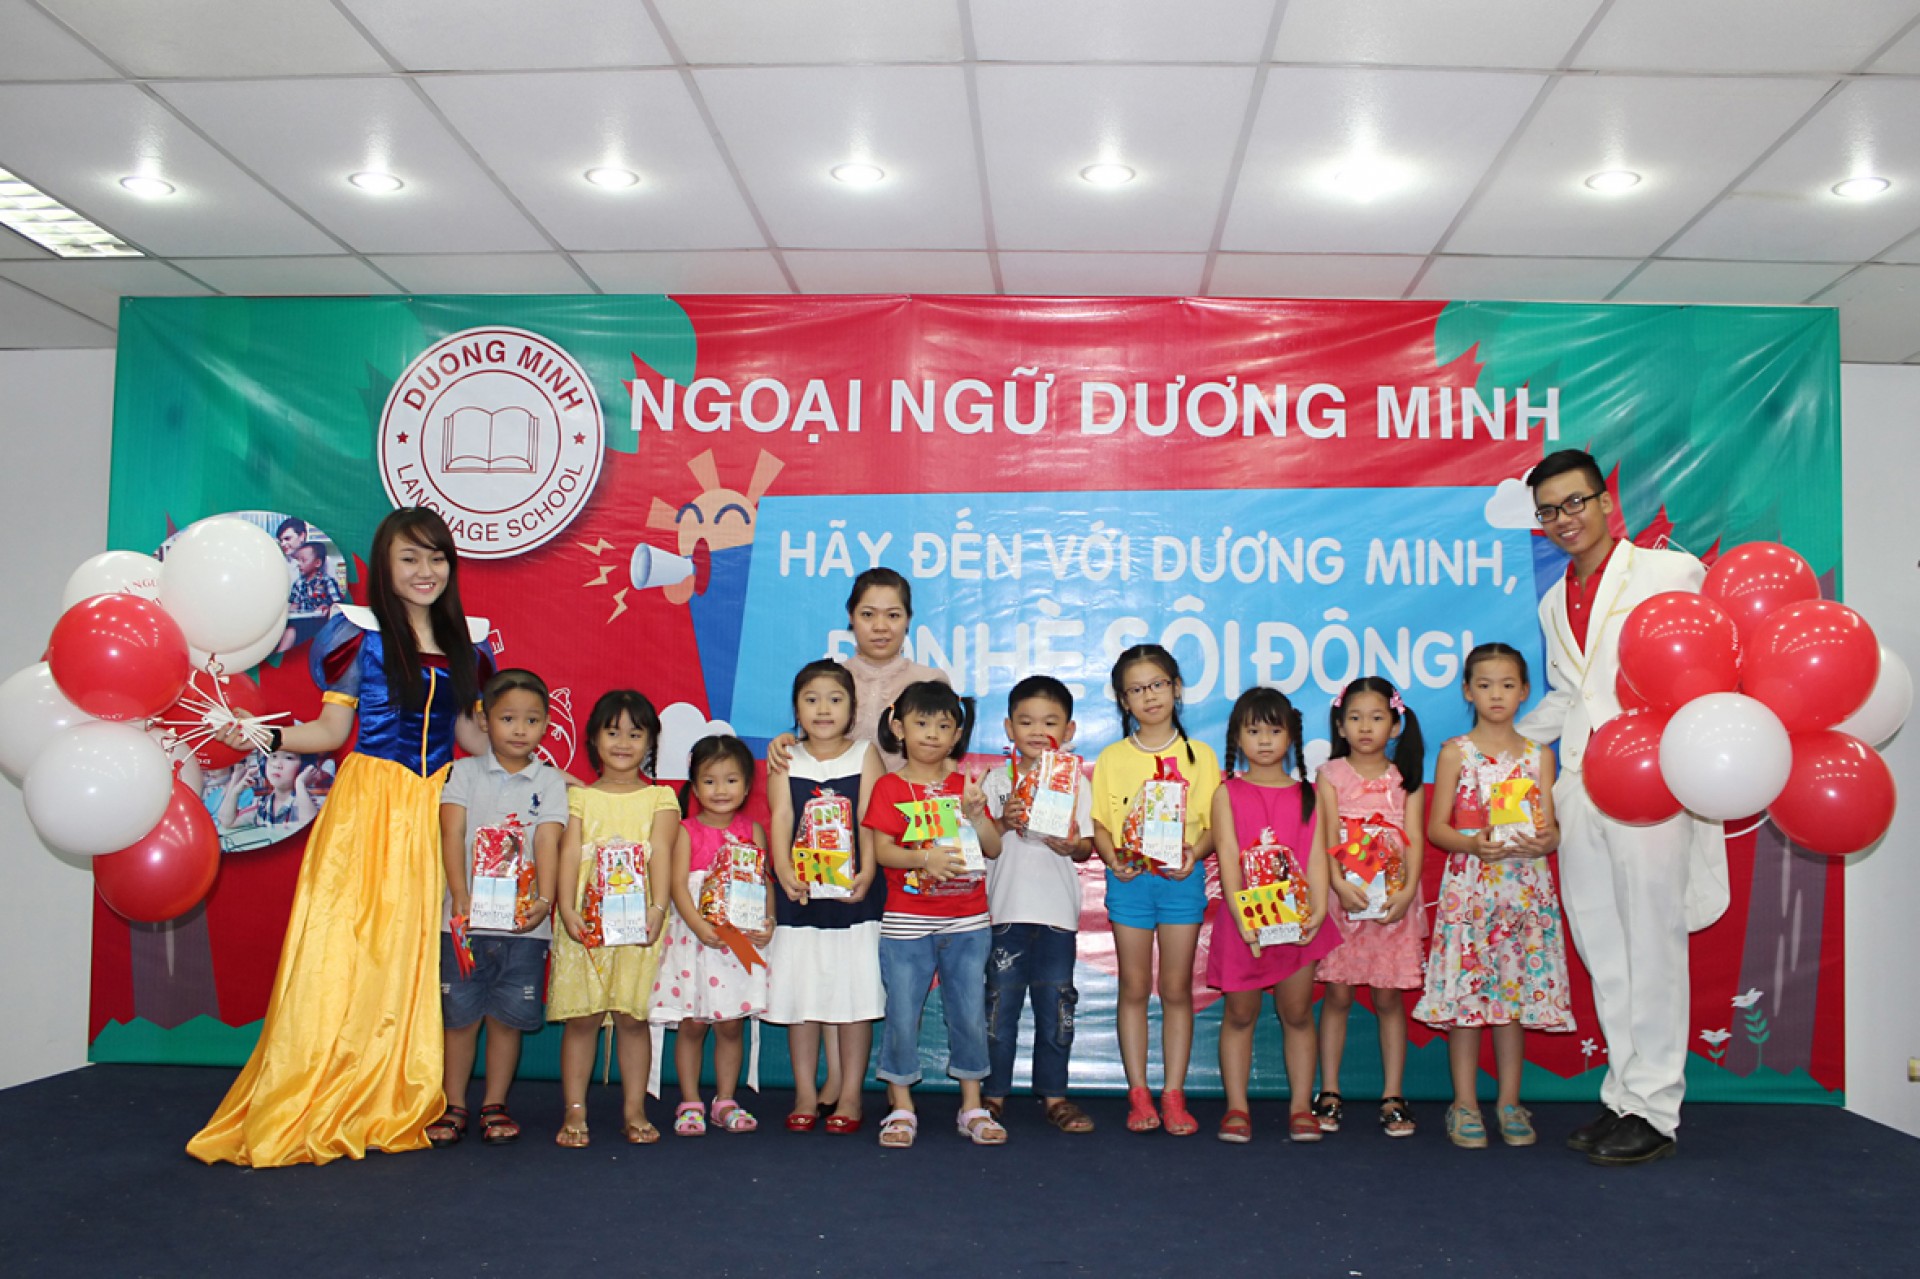 Giới thiệu các khóa học tại trung tâm Ngoại ngữ Dương Minh